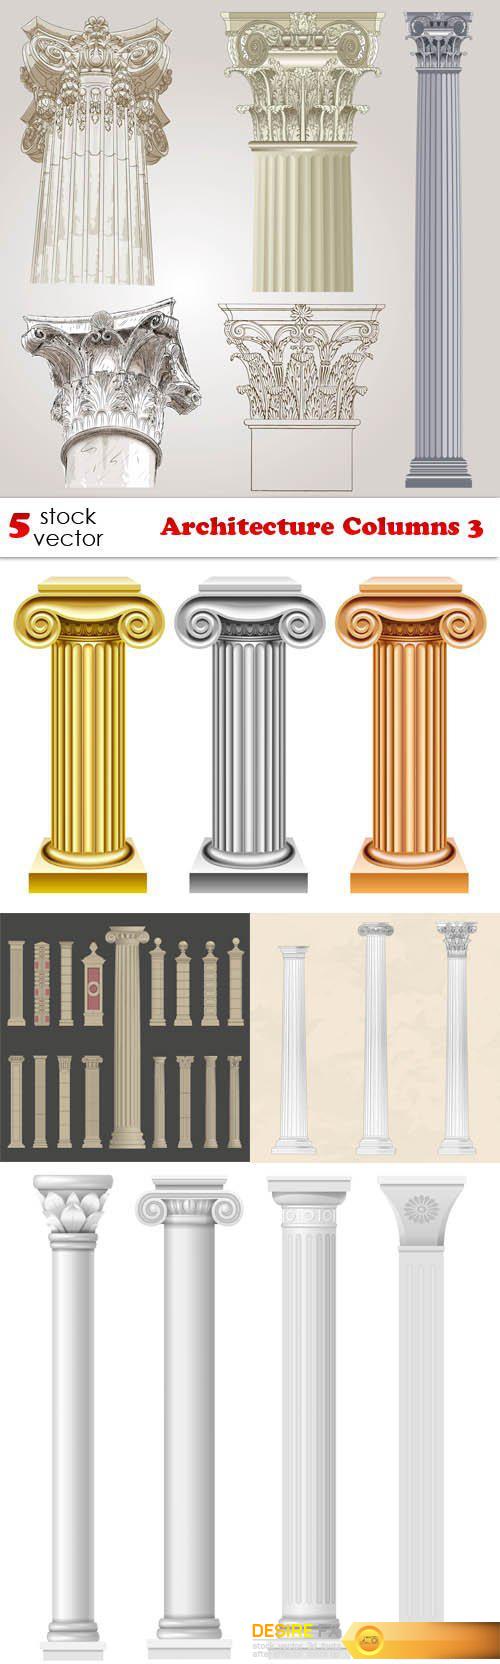 Vectors - Architecture Columns 3